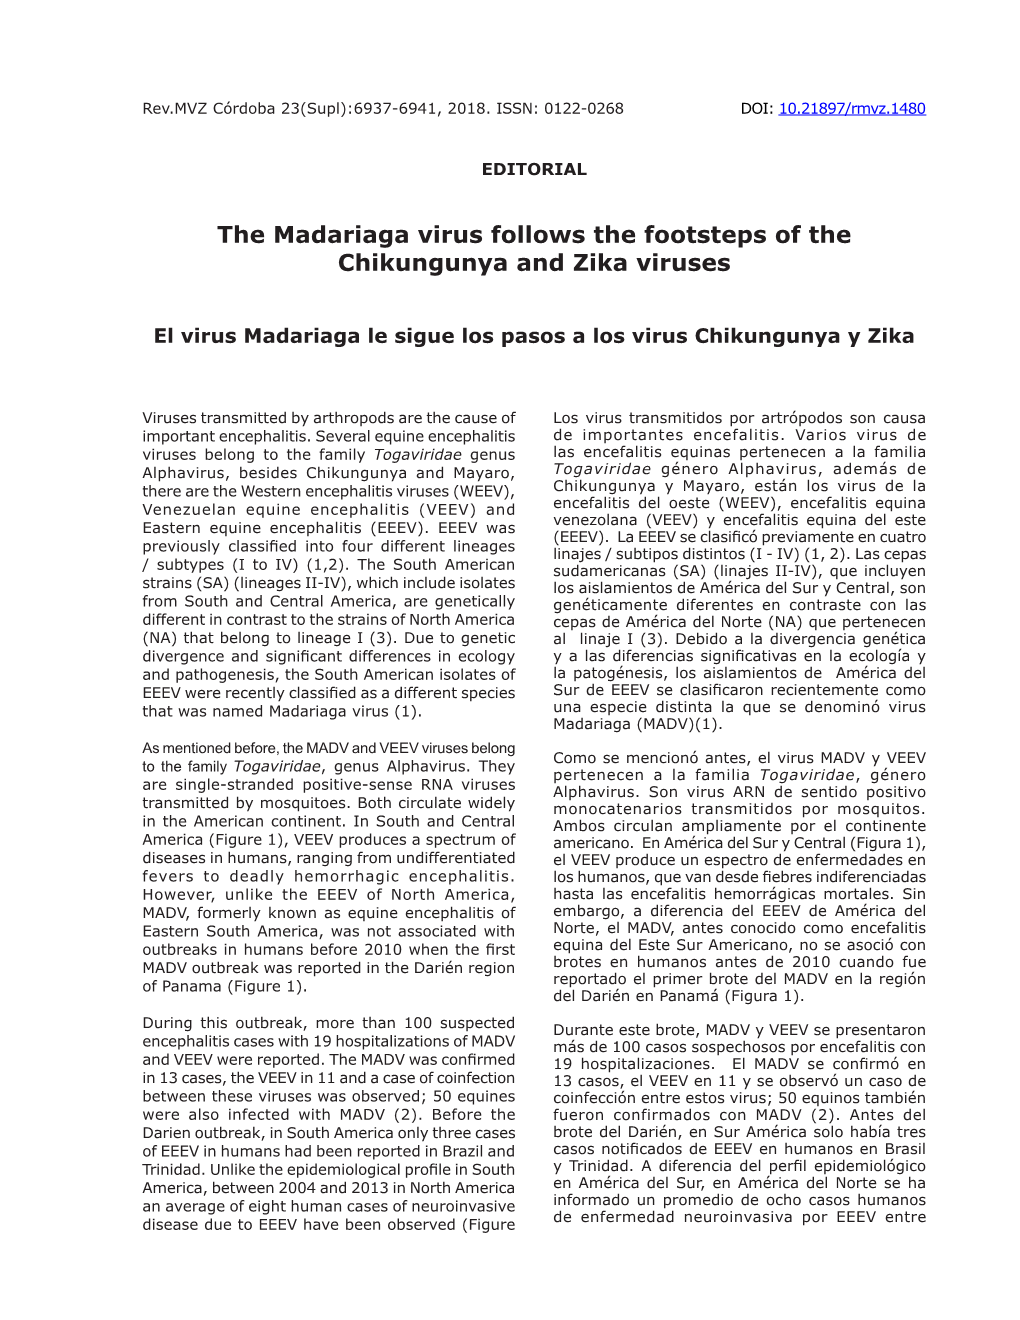 The Madariaga Virus Follows the Footsteps of the Chikungunya and Zika Viruses